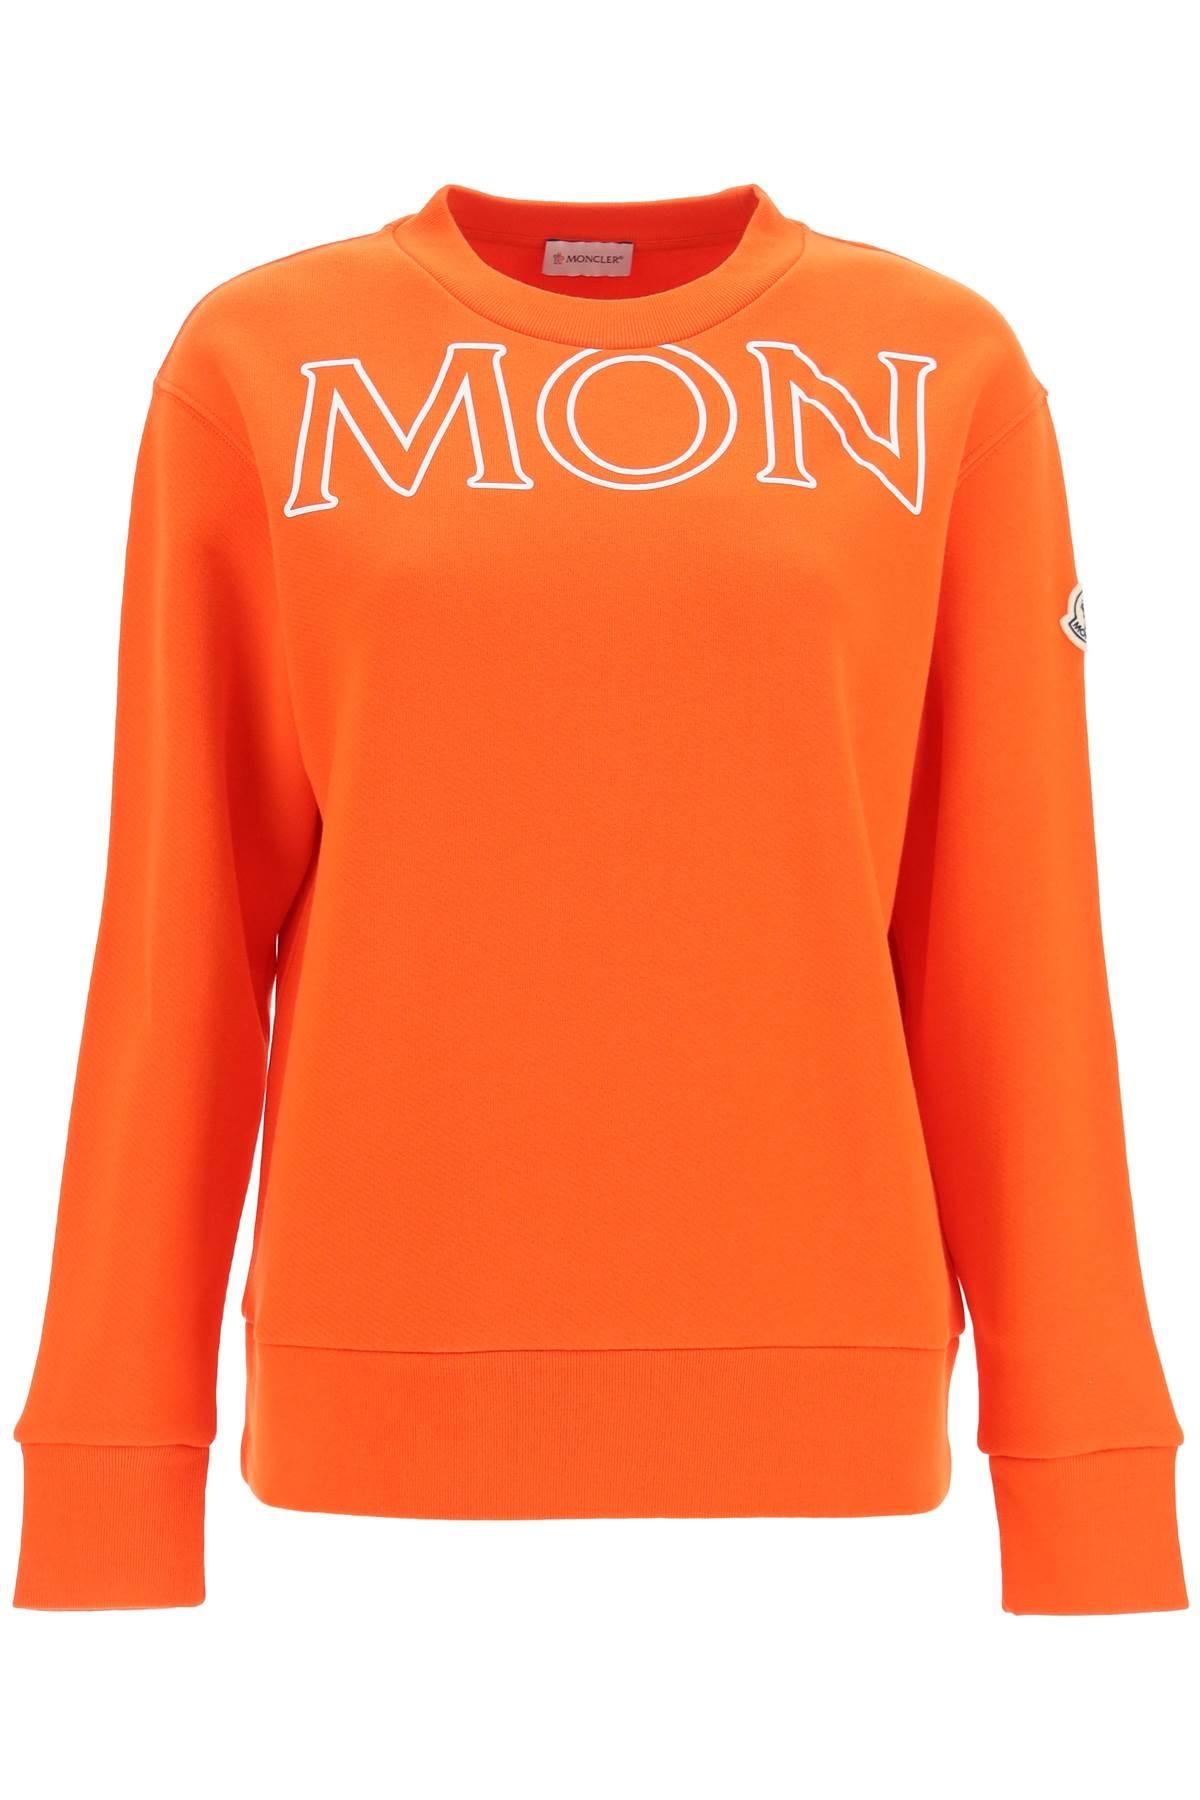 Moncler Logo Lettering Sweatshirt in Orange | Lyst